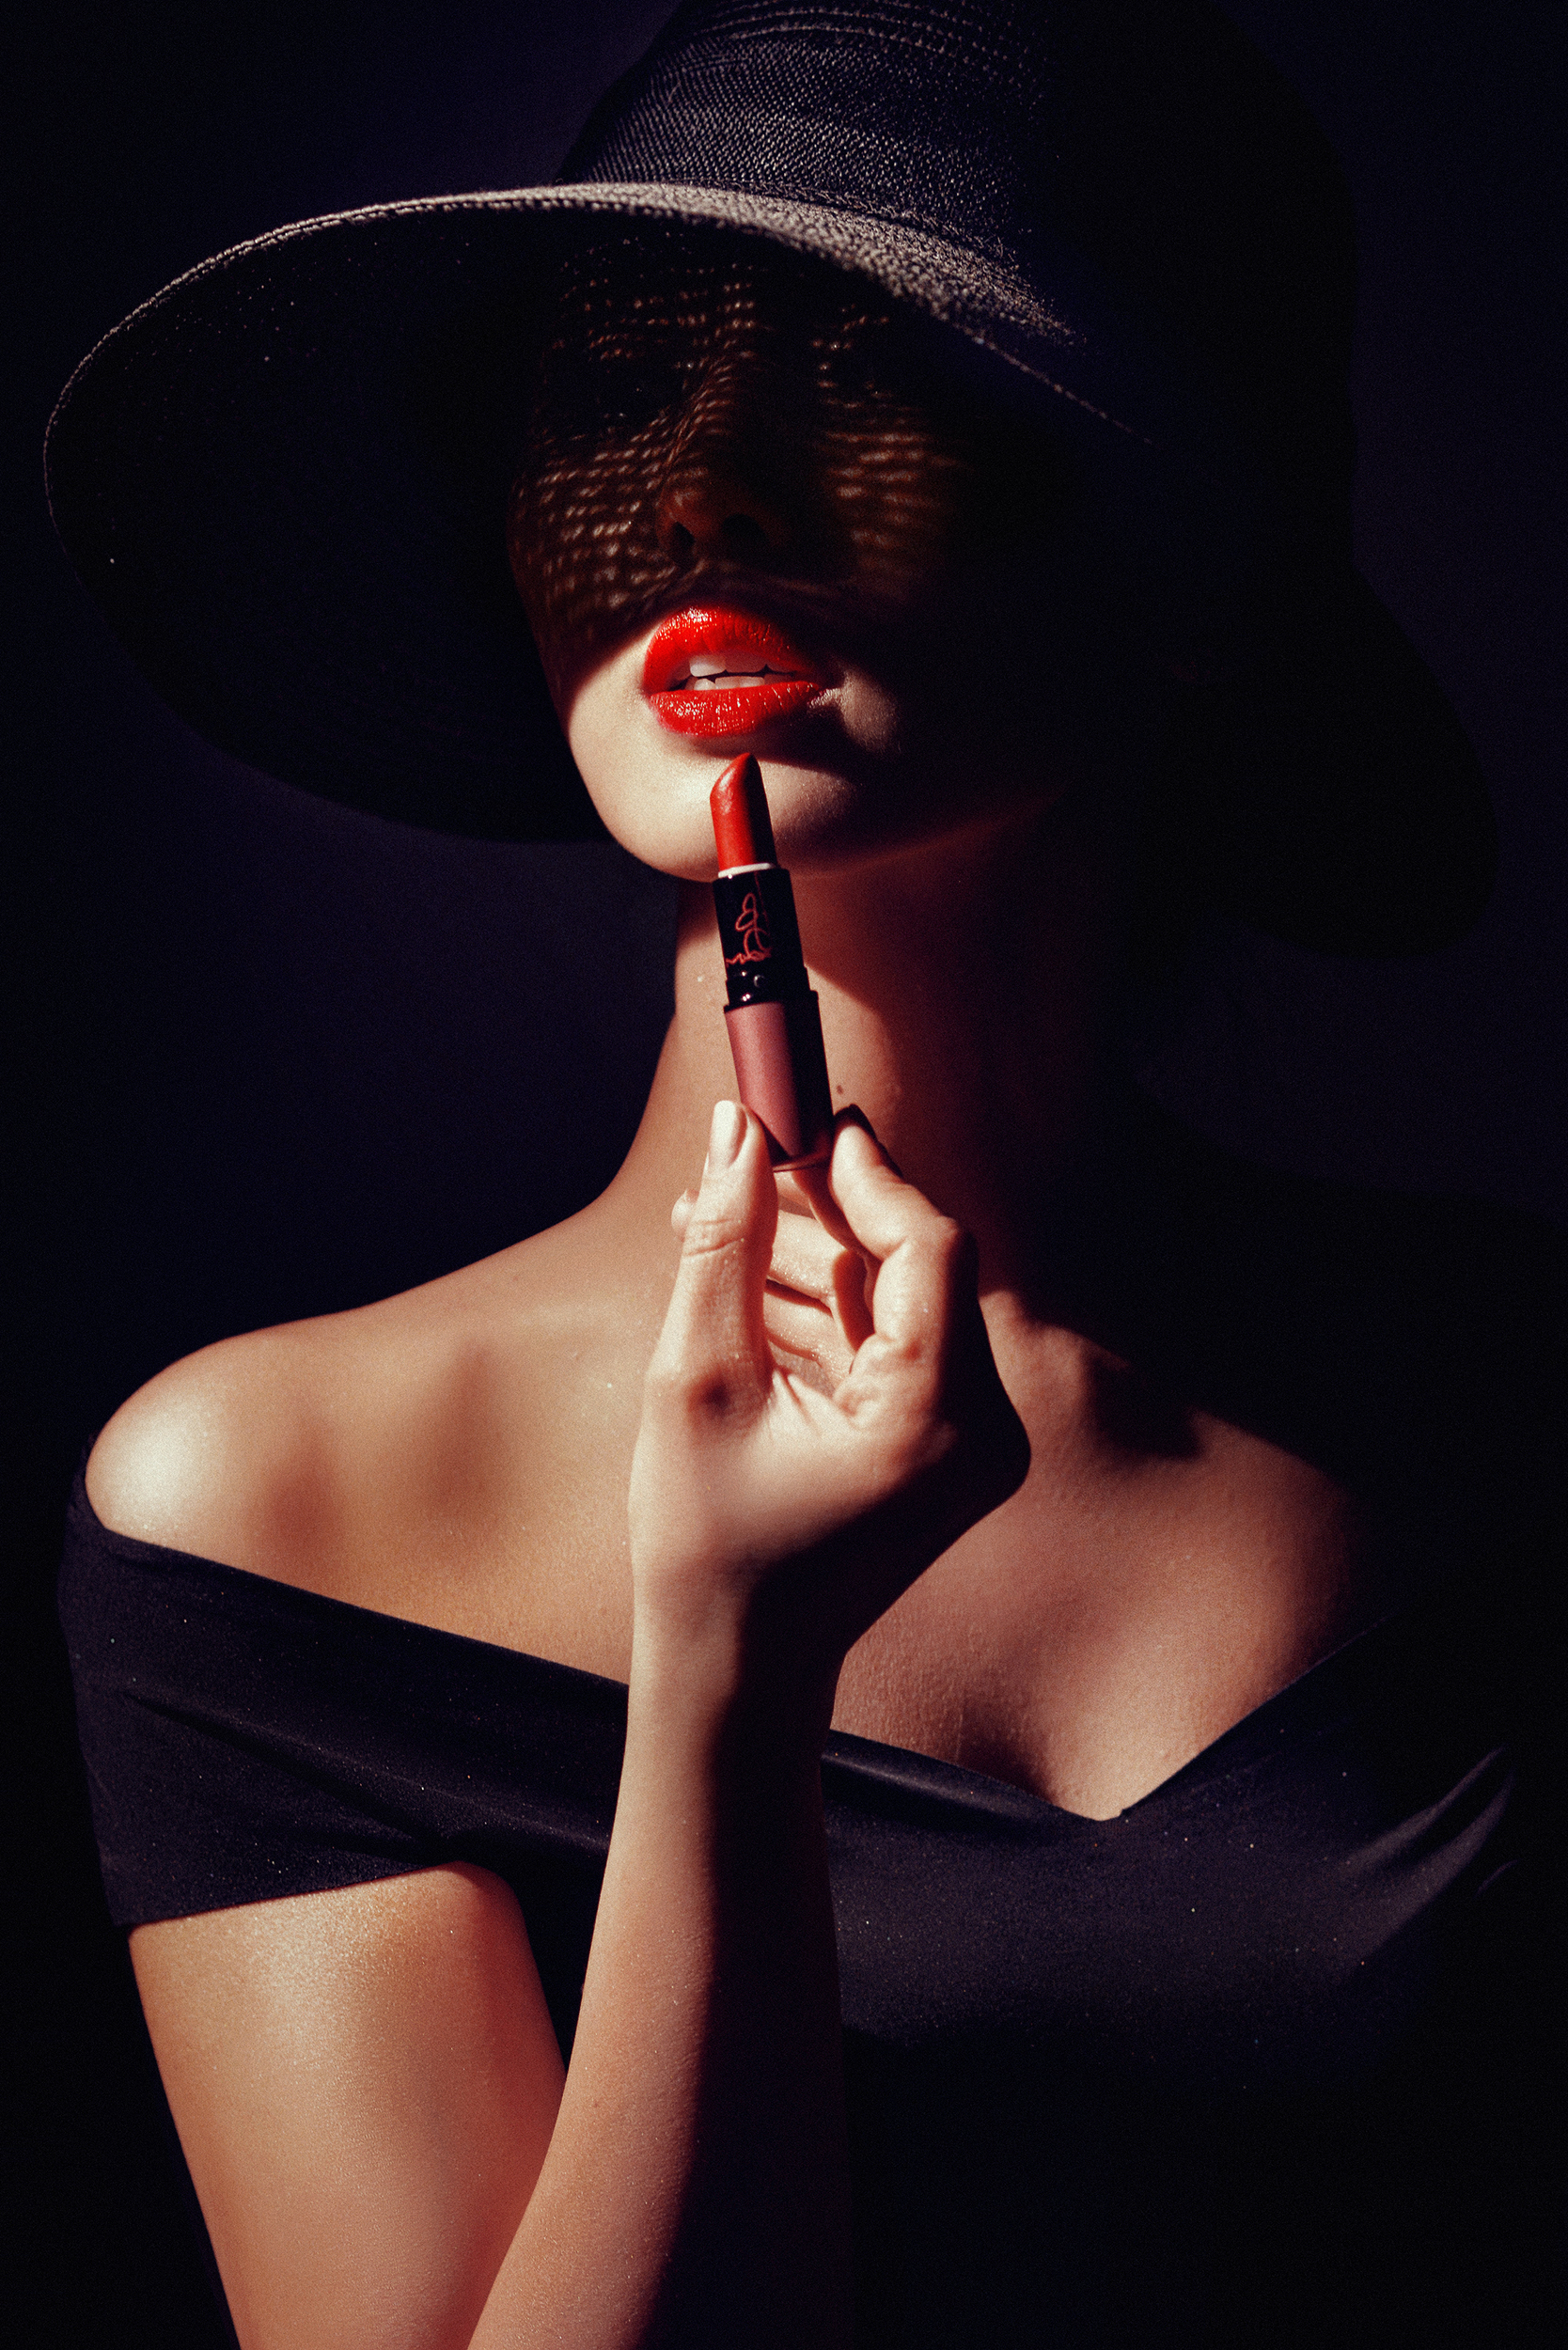 Фото Девушка в шляпе держит у губ помаду, фотограф Николаев Андрей